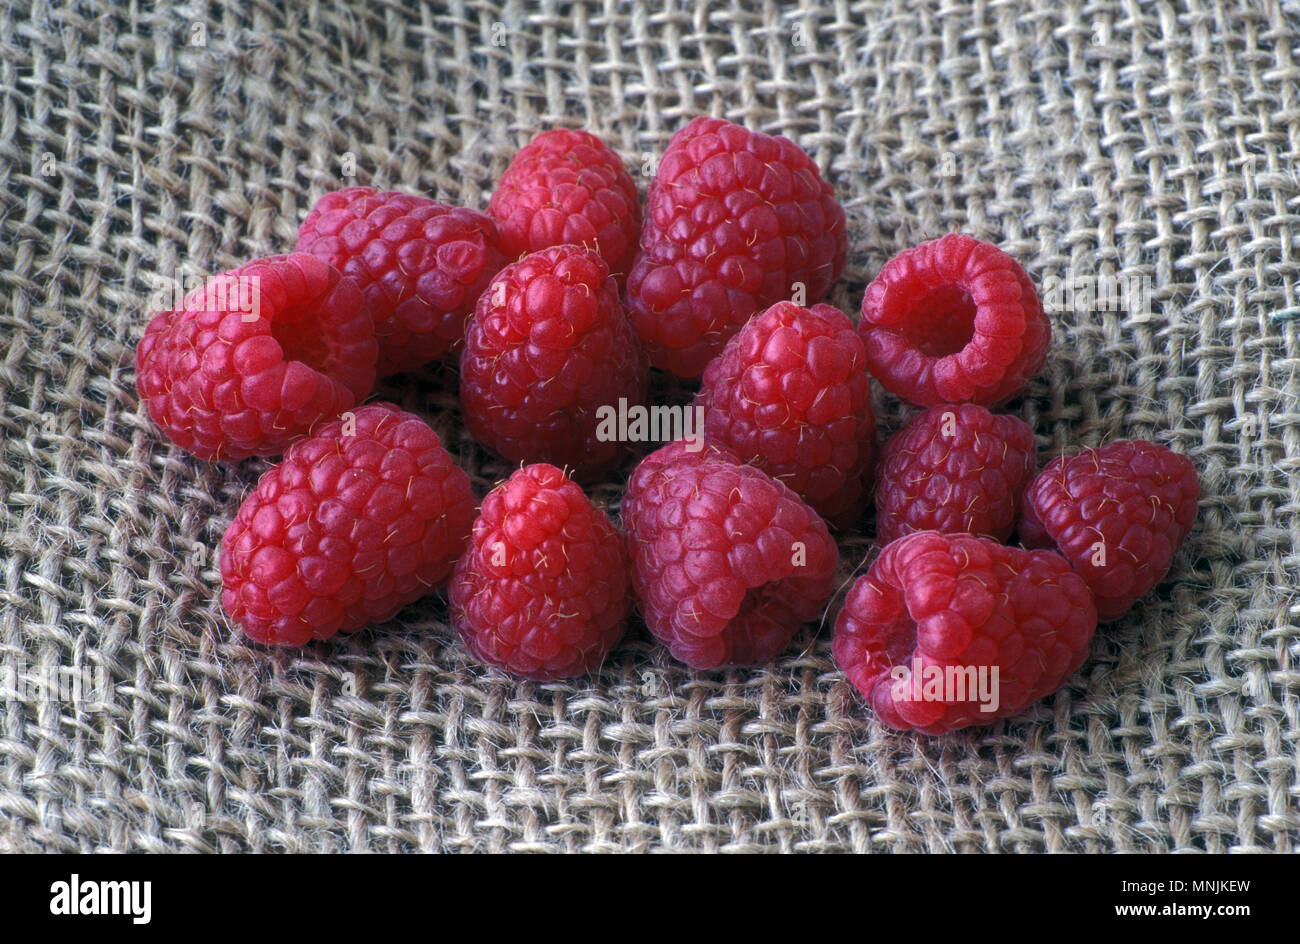 À fruits rouges fraîchement récolté framboises (Rubus) Banque D'Images